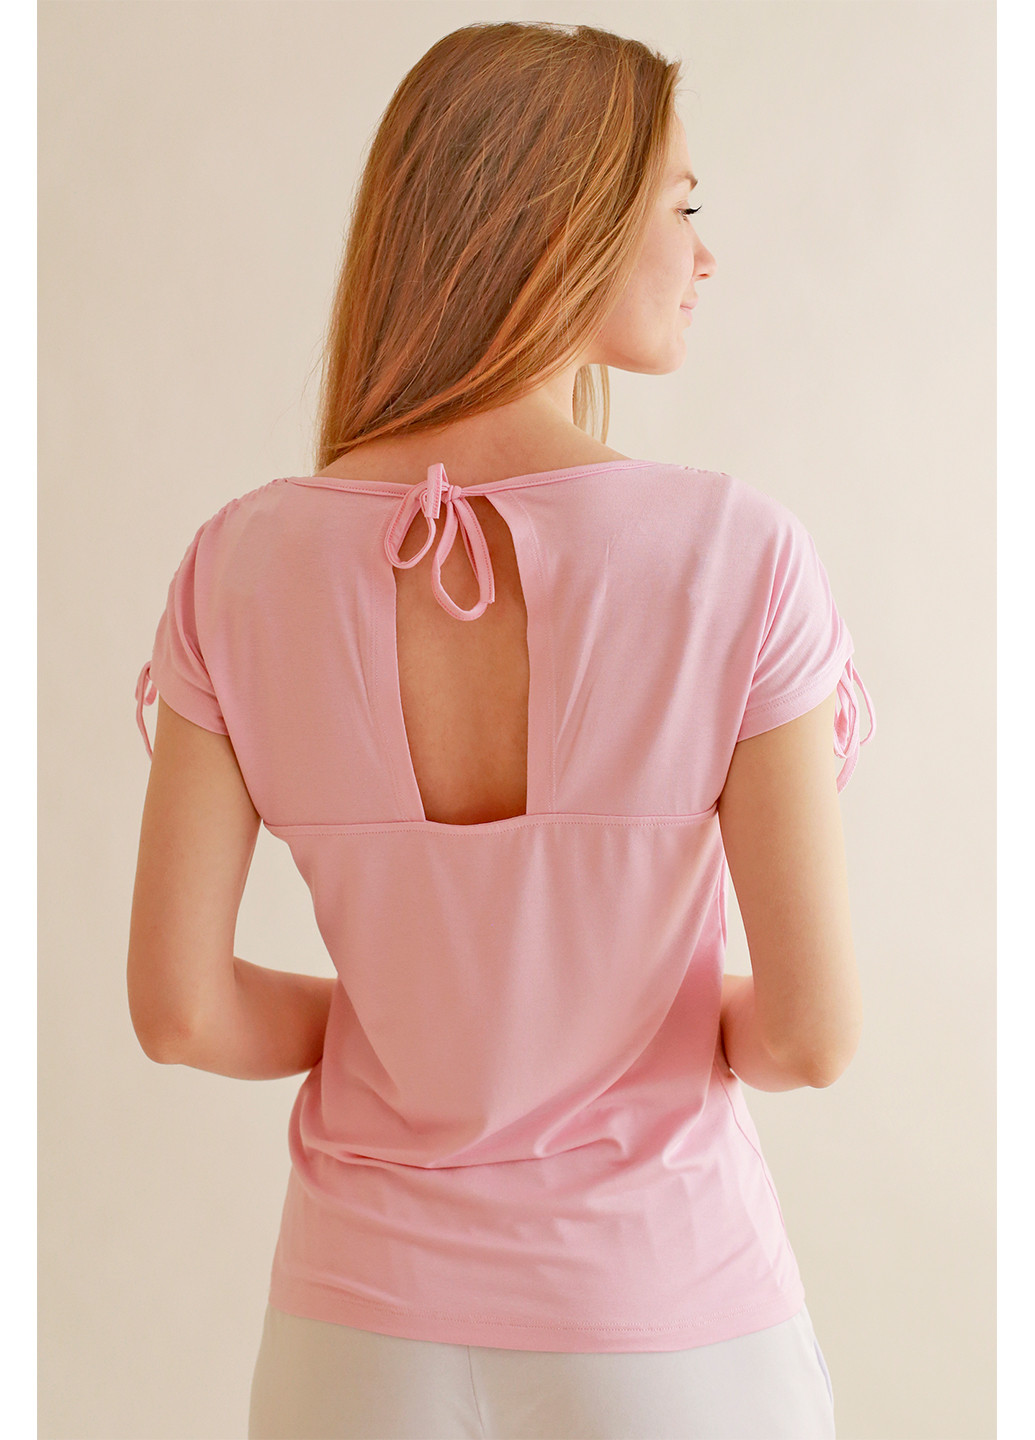 Розовая летняя футболка женская с коротким рукавом Kosta 1233-7